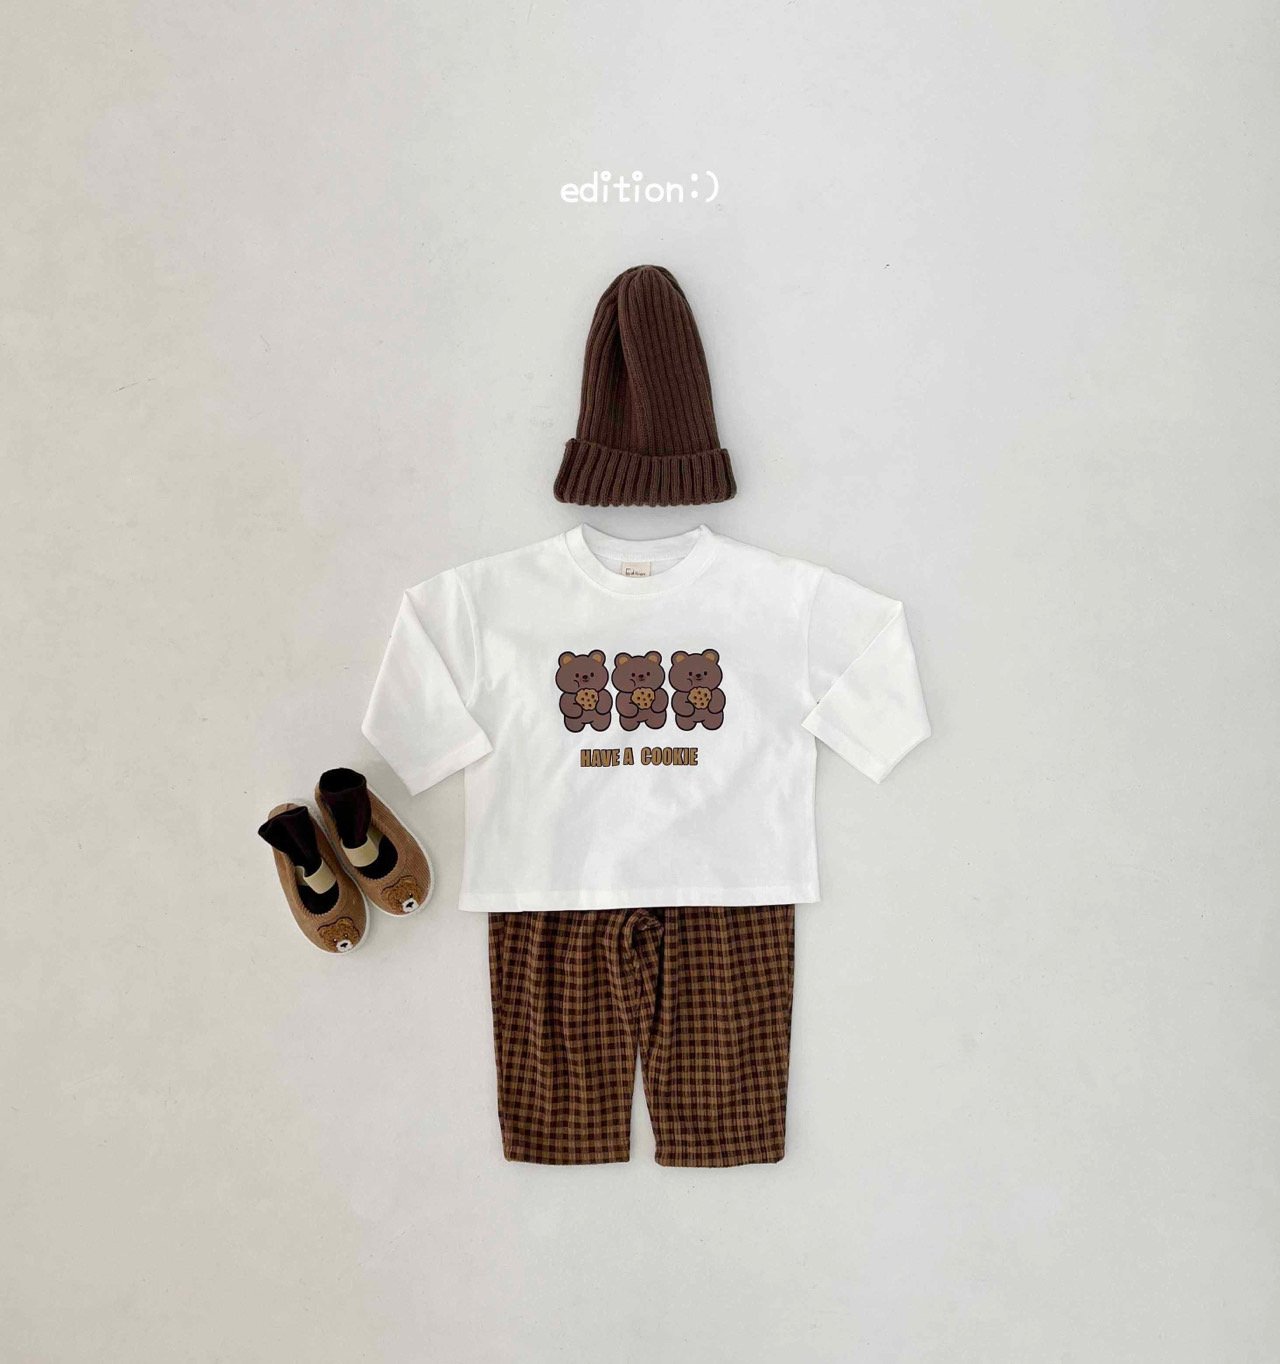 Edition - Korean Children Fashion - #todddlerfashion - Cookie Bear Check Set - 10